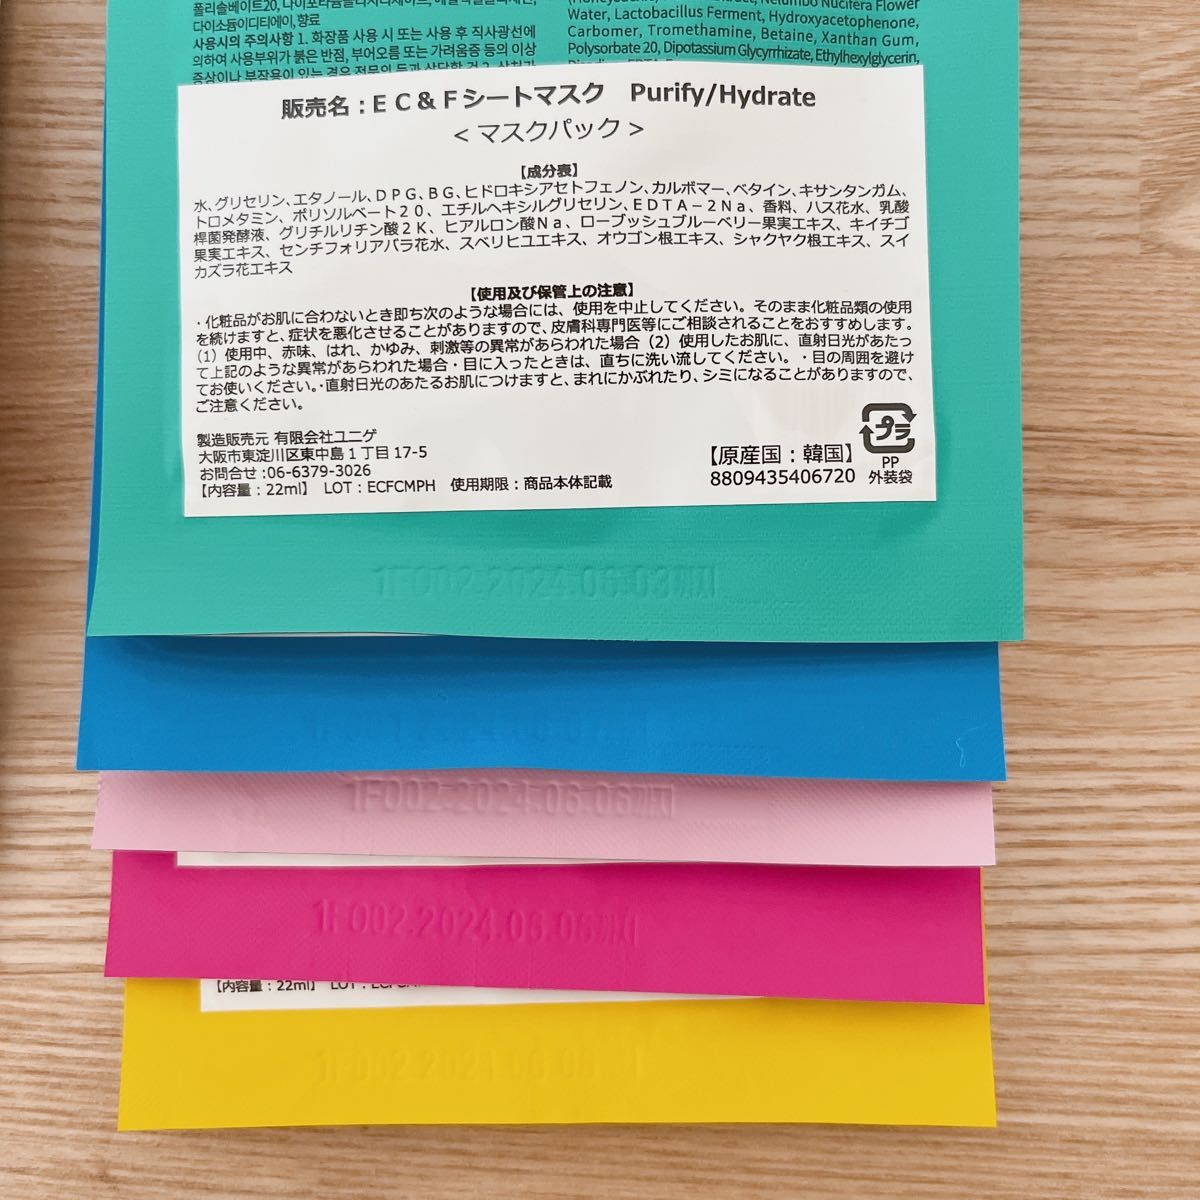 ウンユル クリーン＆フレッシュシートマスク - 10種類 22ml x 10点 フェイシャルパック パック スキンケア 韓国コスメ